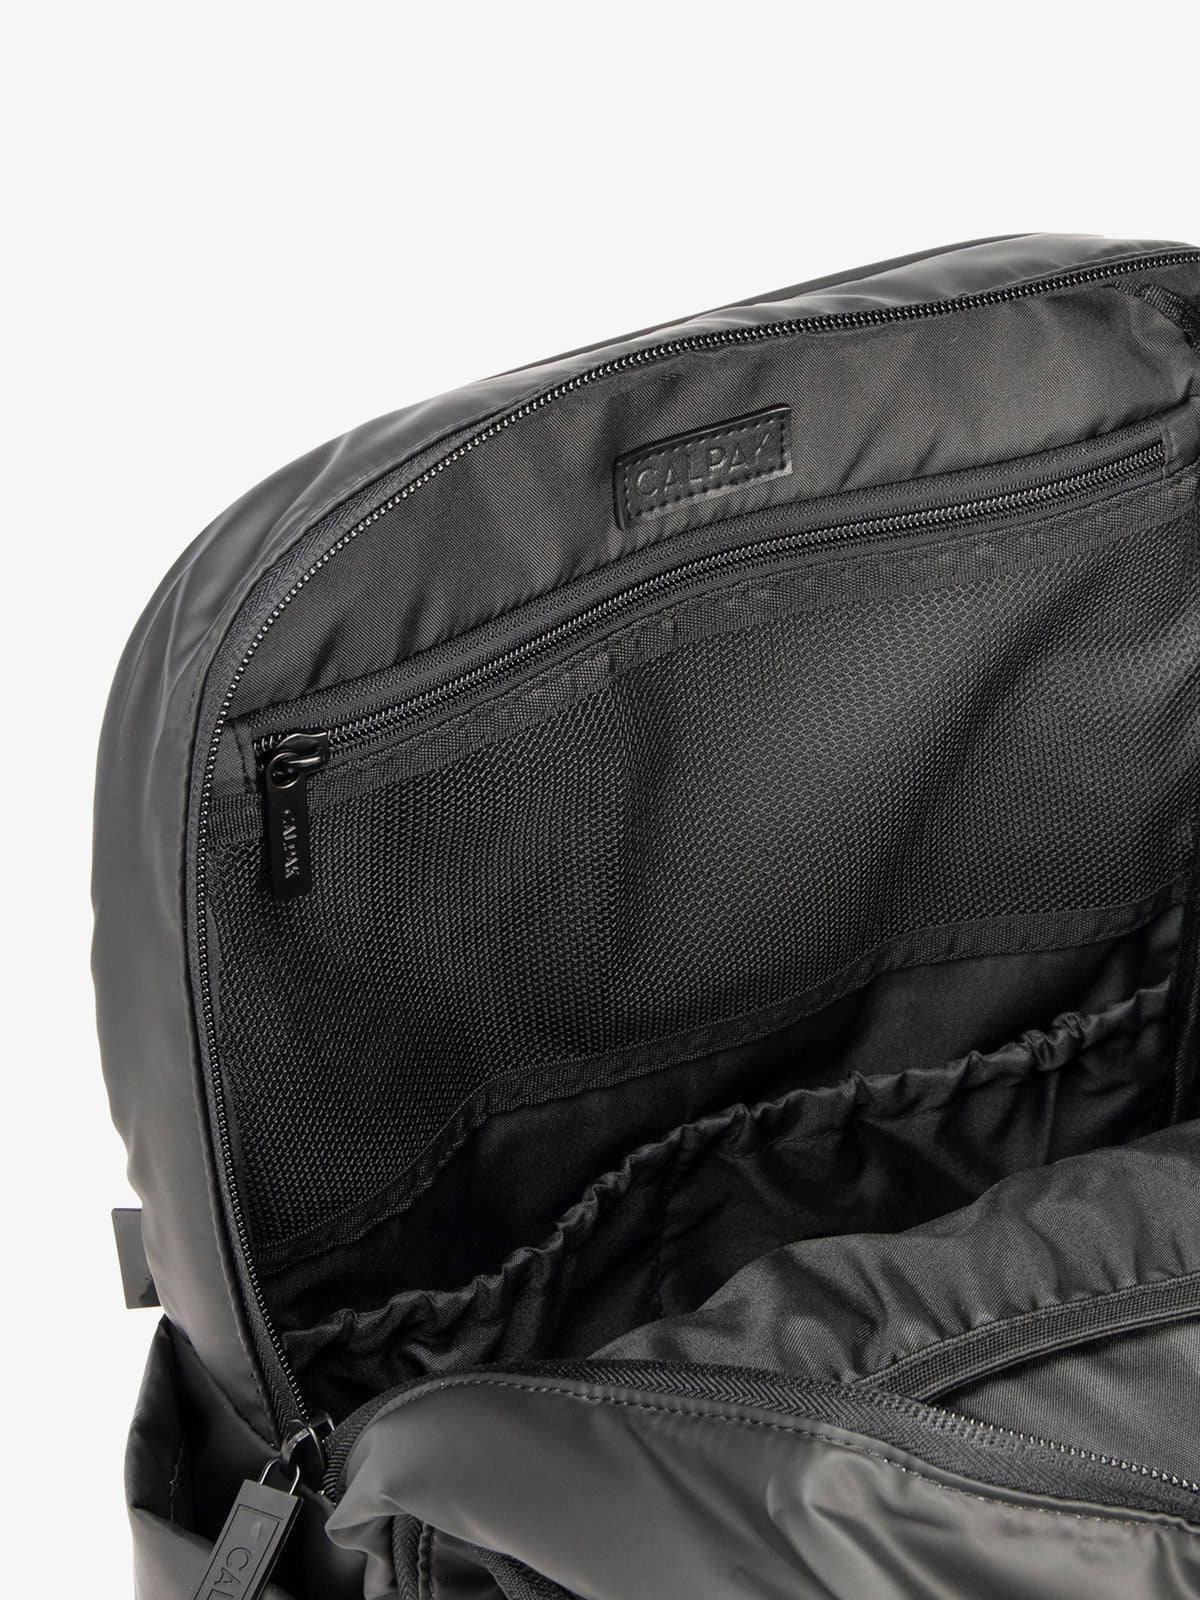 New Look Black Satin Backpack Quilted Pocket Gold Hardware Rucksack